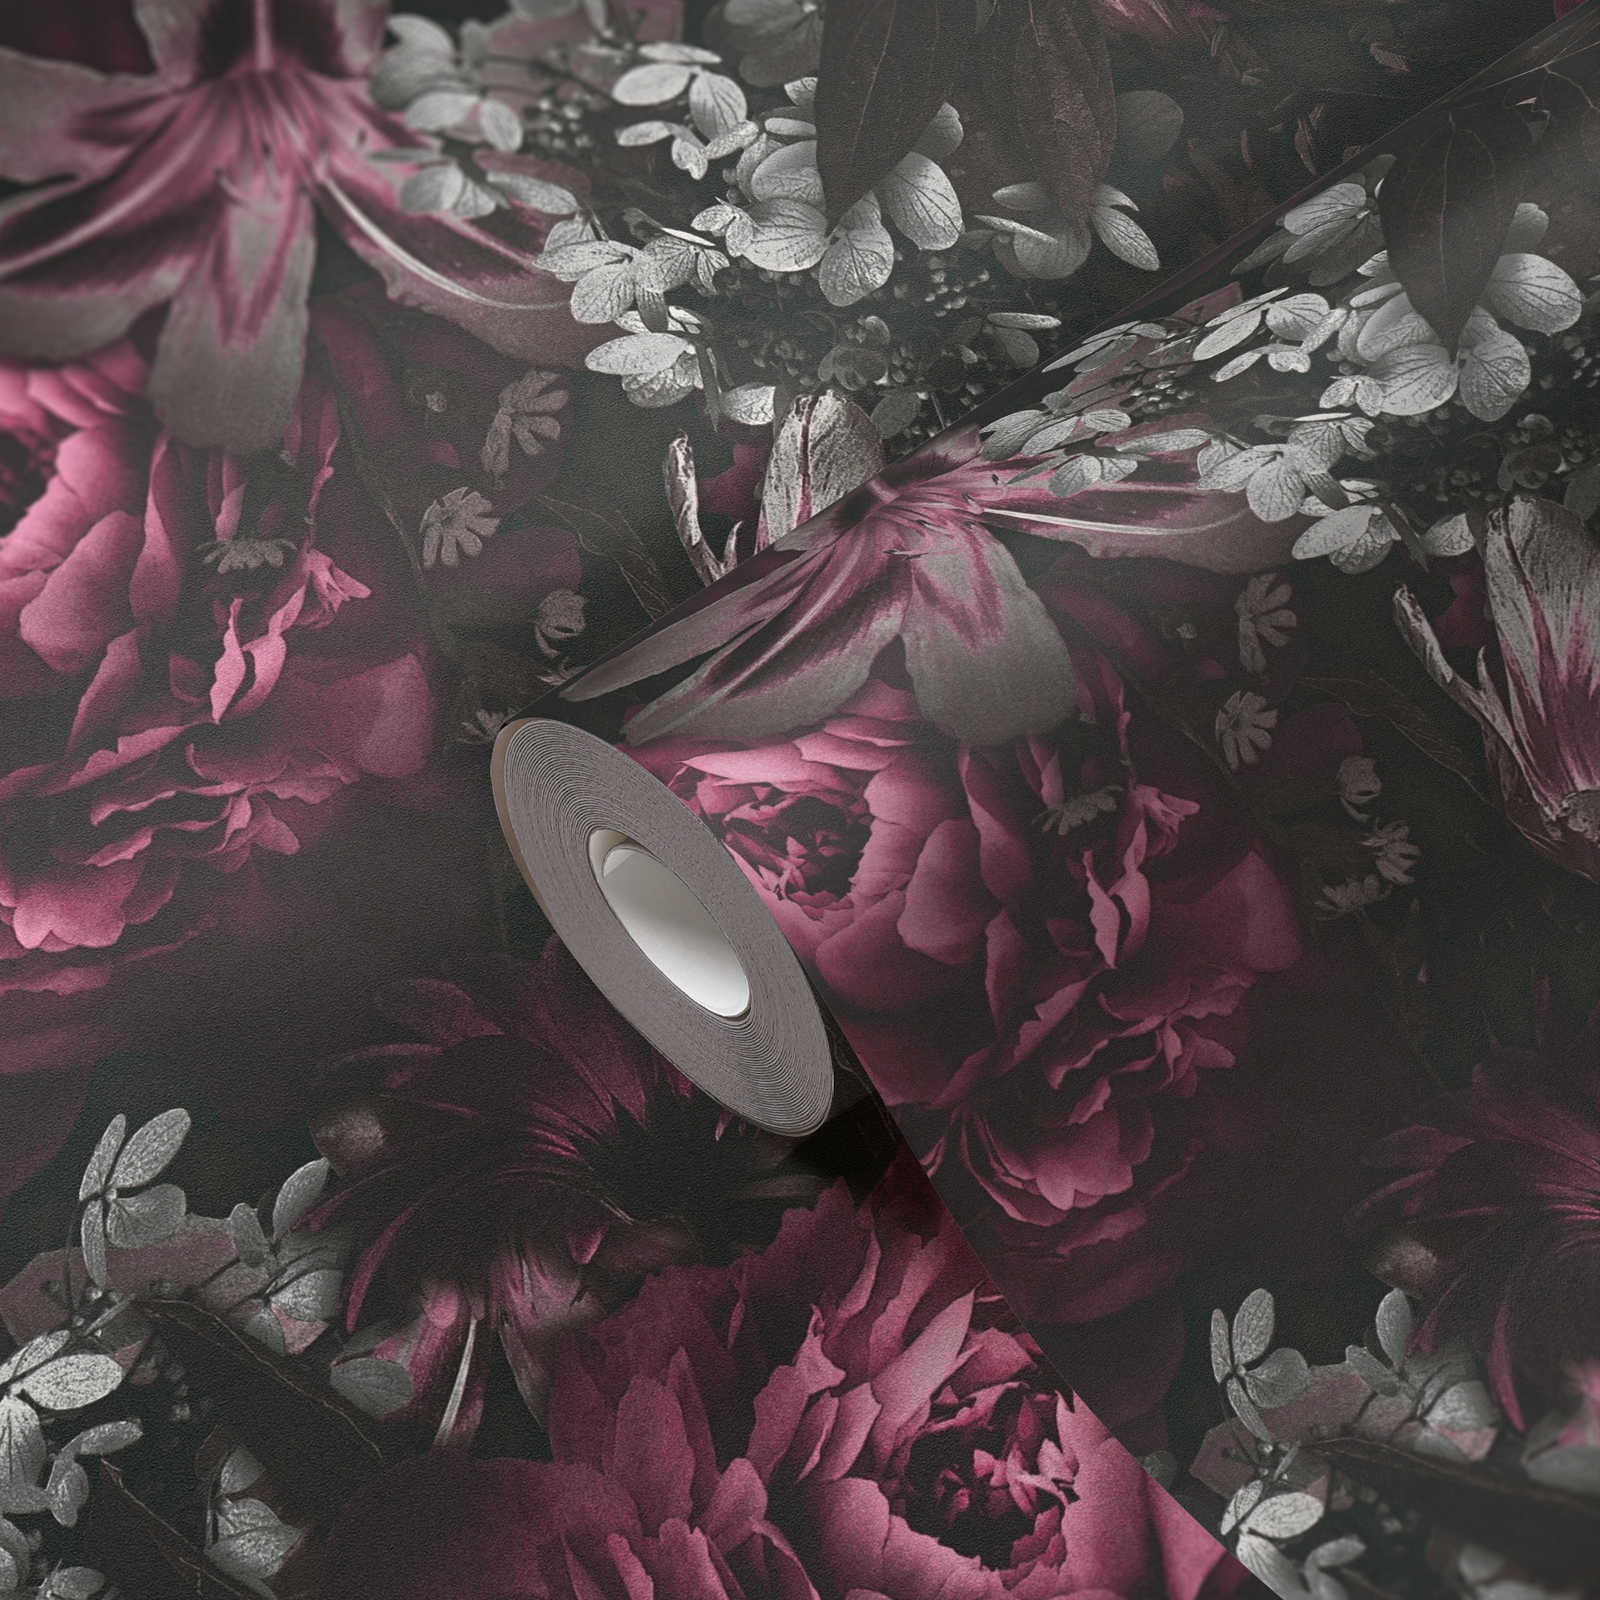             papel pintado rosas y tulipanes en estilo clásico - rosa, gris
        